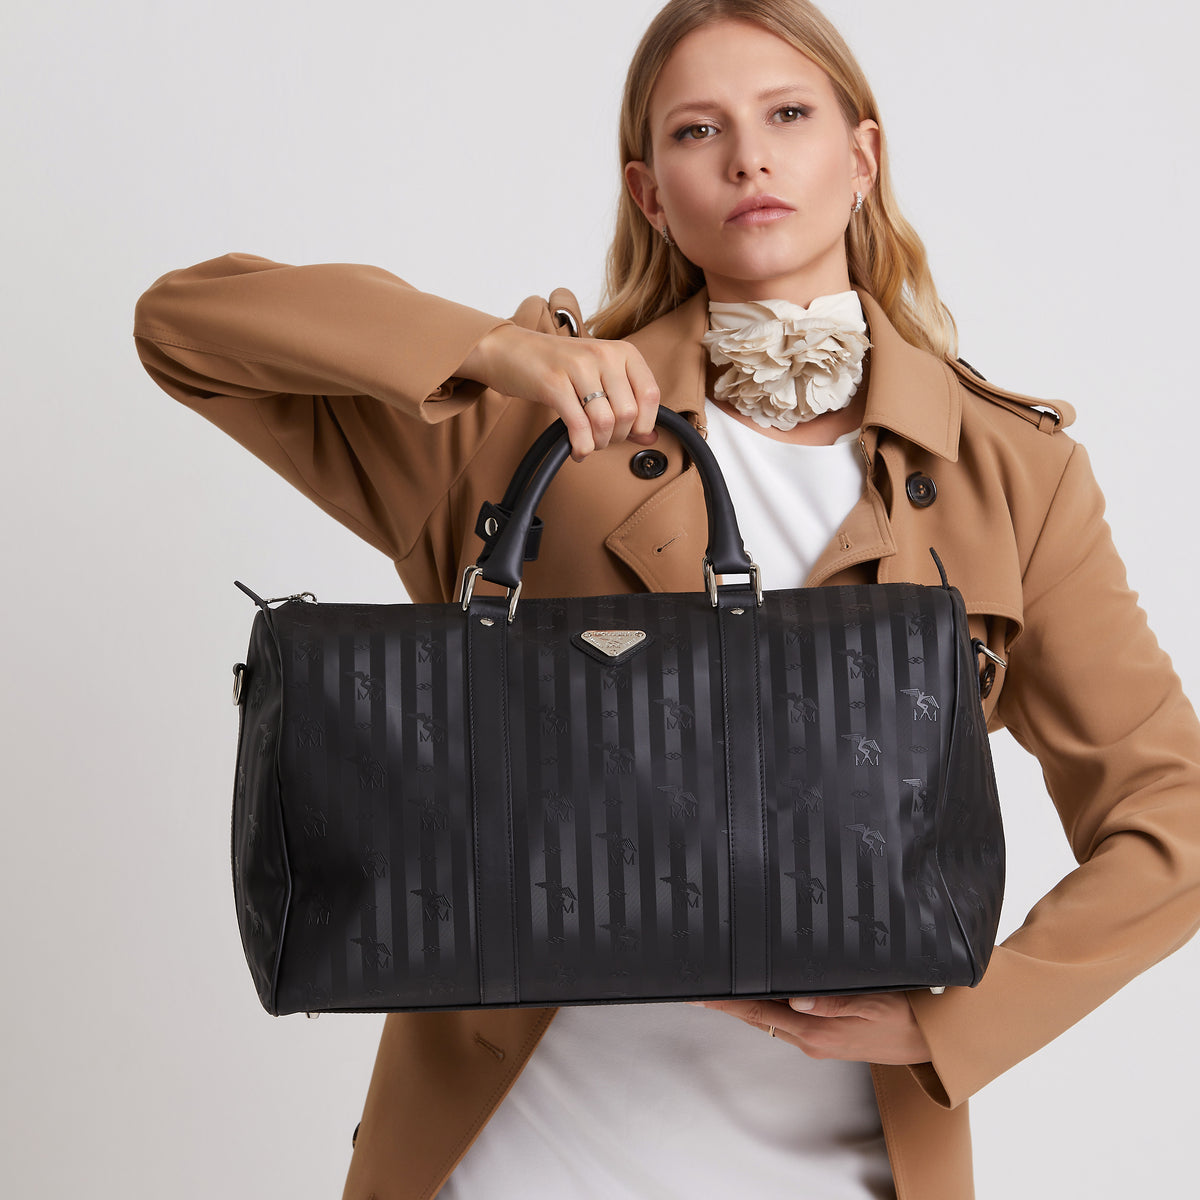 Die Madrid Reisetasche in schwarz/silber von Maison Mollerus ist die perfekte Begleiterin für Ihre Reisen. Sie bietet viel Raum und ist zugleich elegant und chic, die perfekte Kombination zwischen Funktionalität und Eleganz. - DETAIL